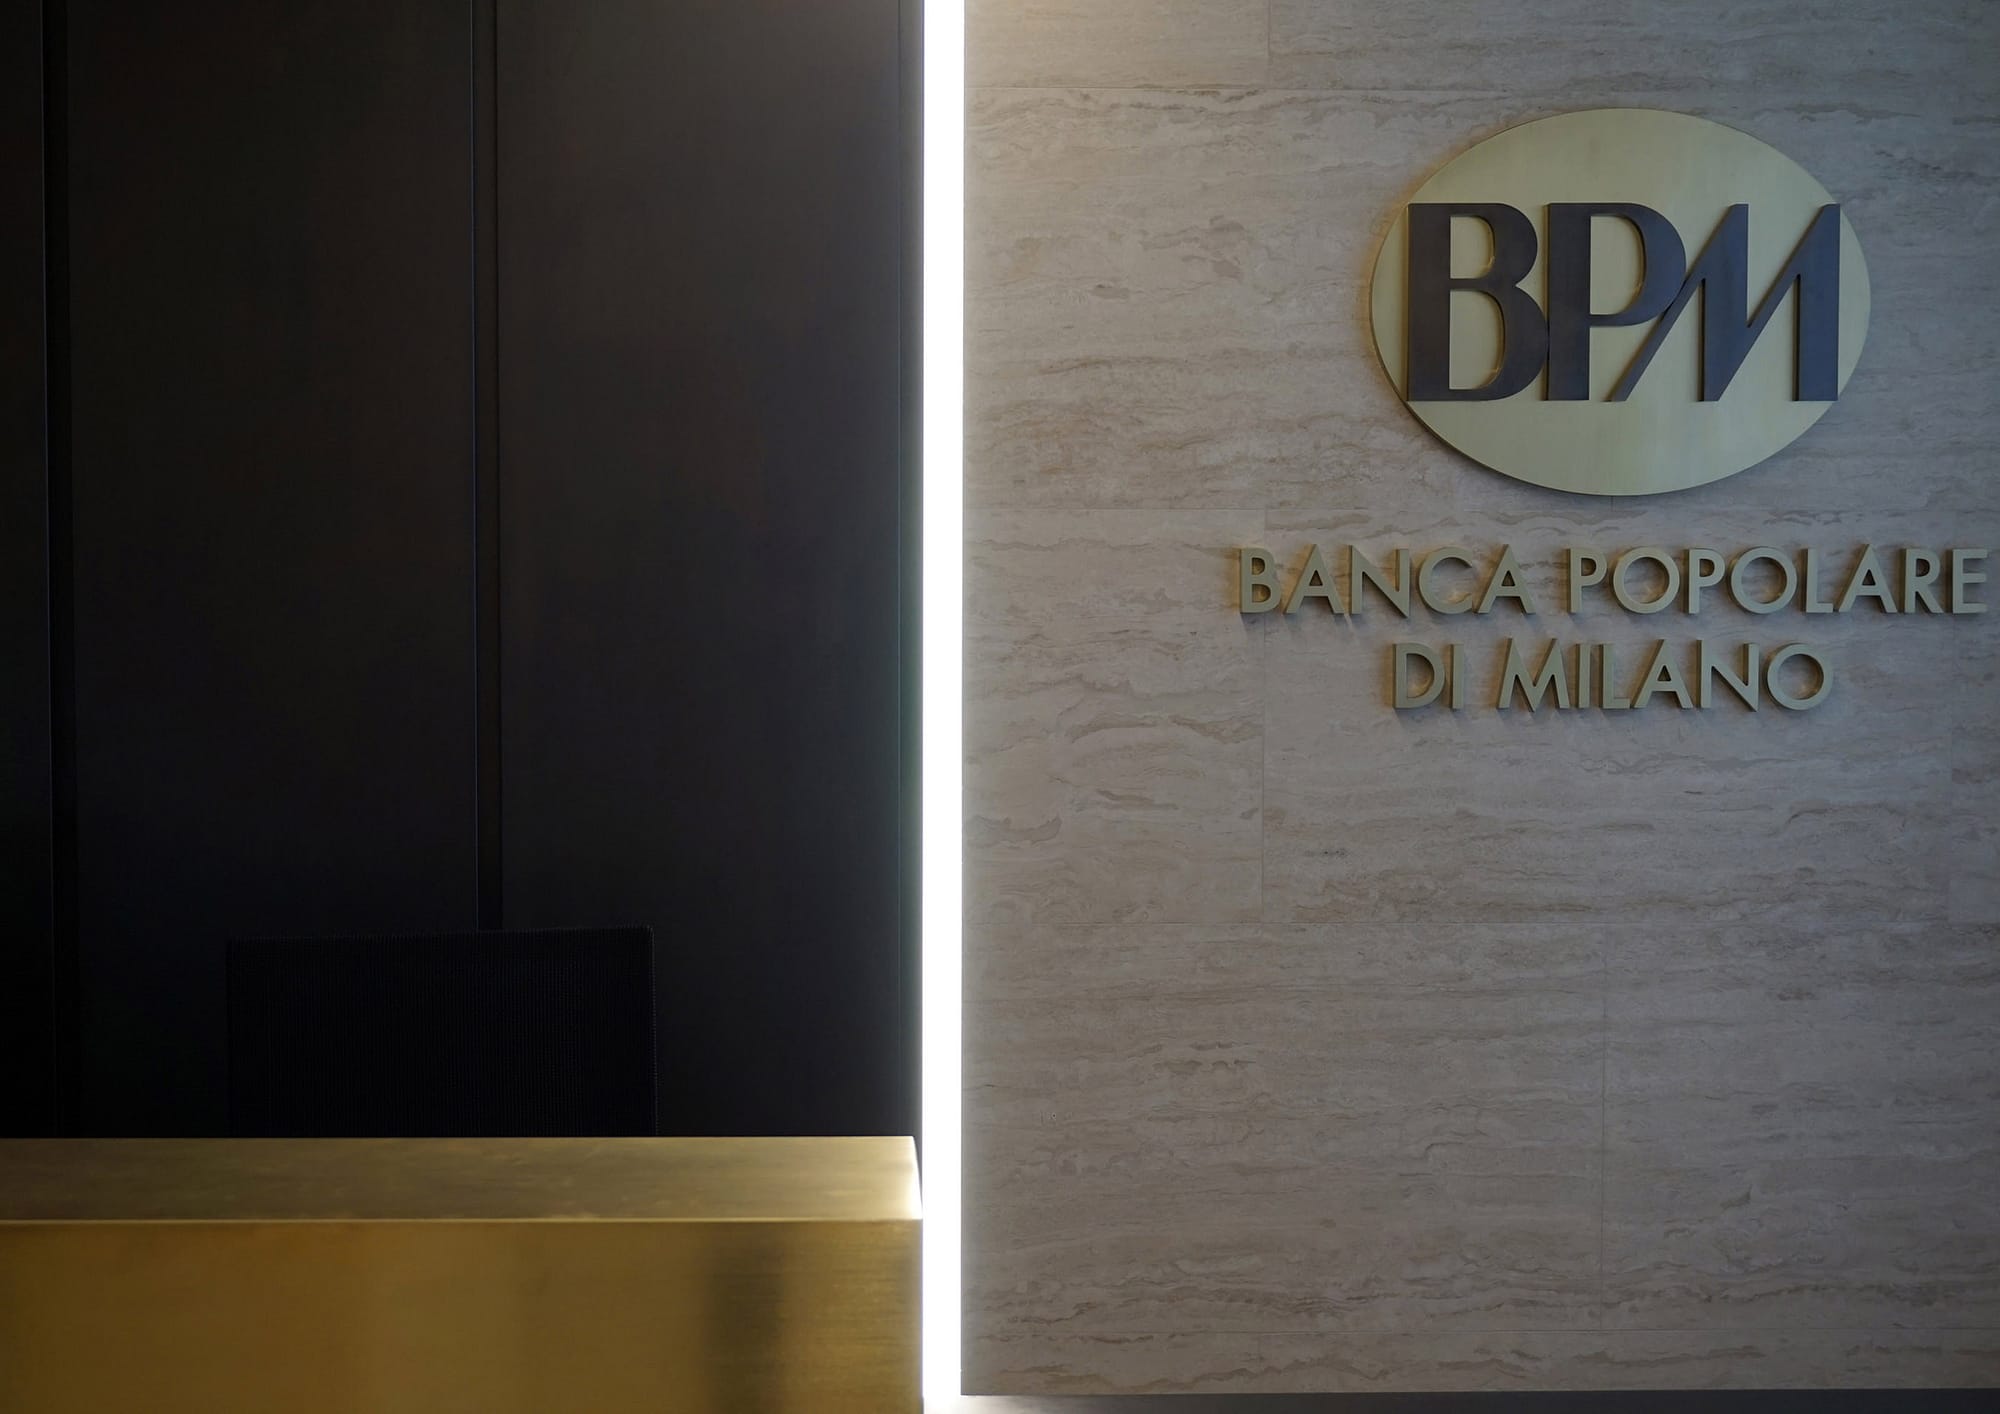 Banco BPM Foyer, vista di dettaglio su desk reception e marchio